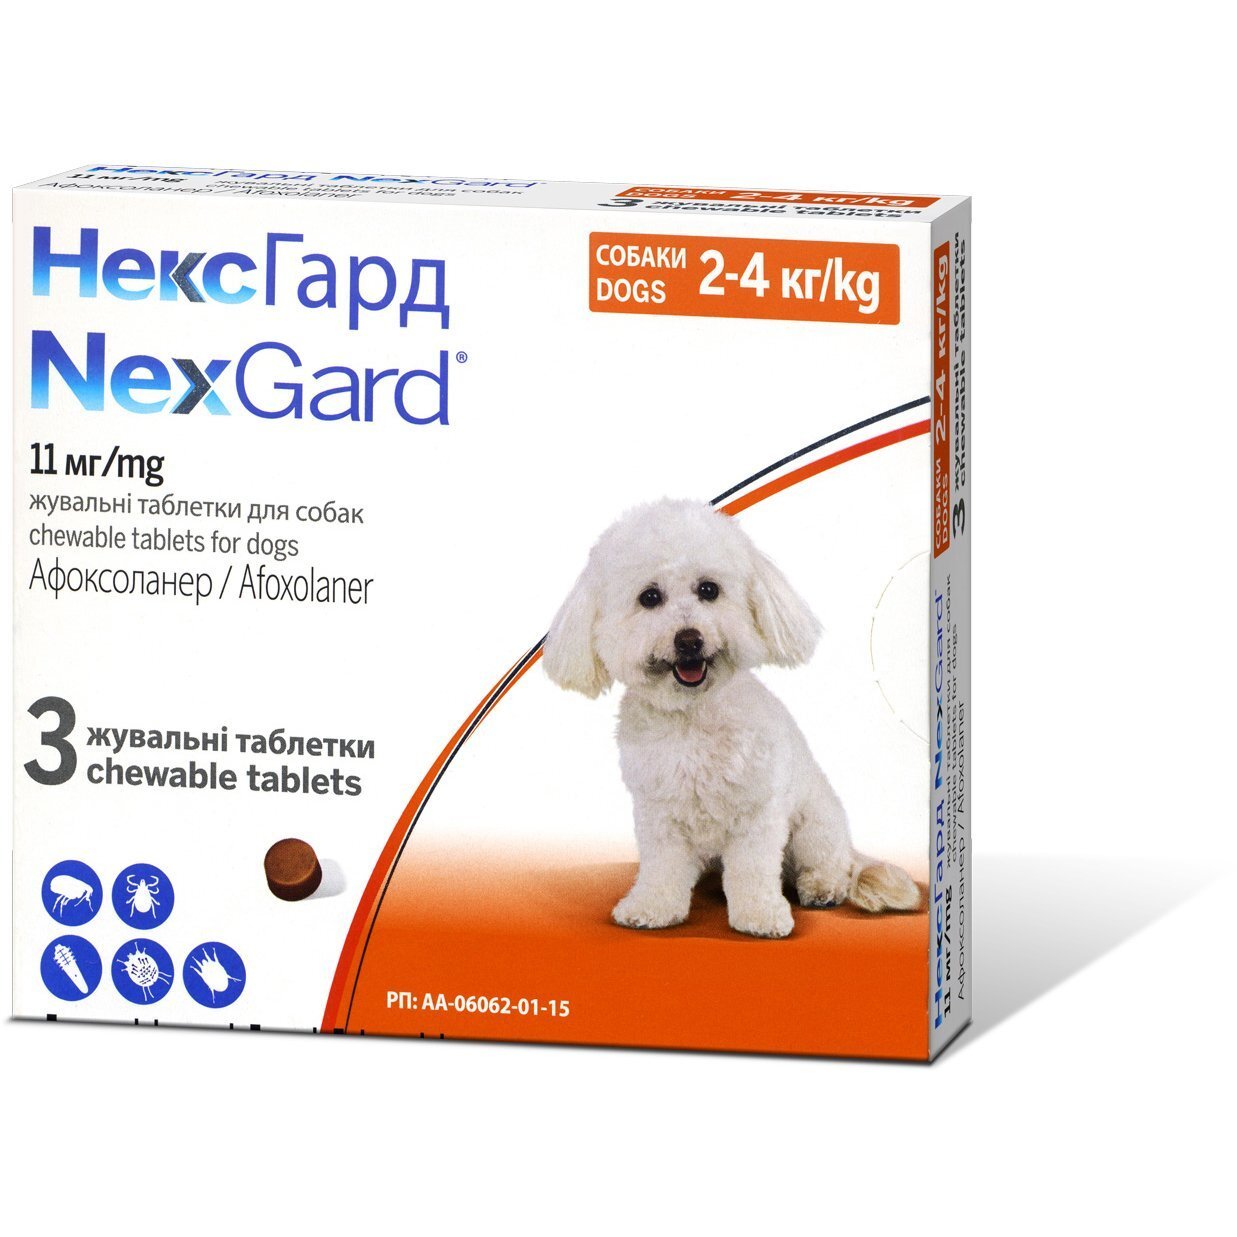 Жувальні таблетки Boehringer Ingelheim Nexgard (Нексгард) від бліх та кліщів для собак вагою 2-4 кг (S) 3 шт.x0.5 г уфото1